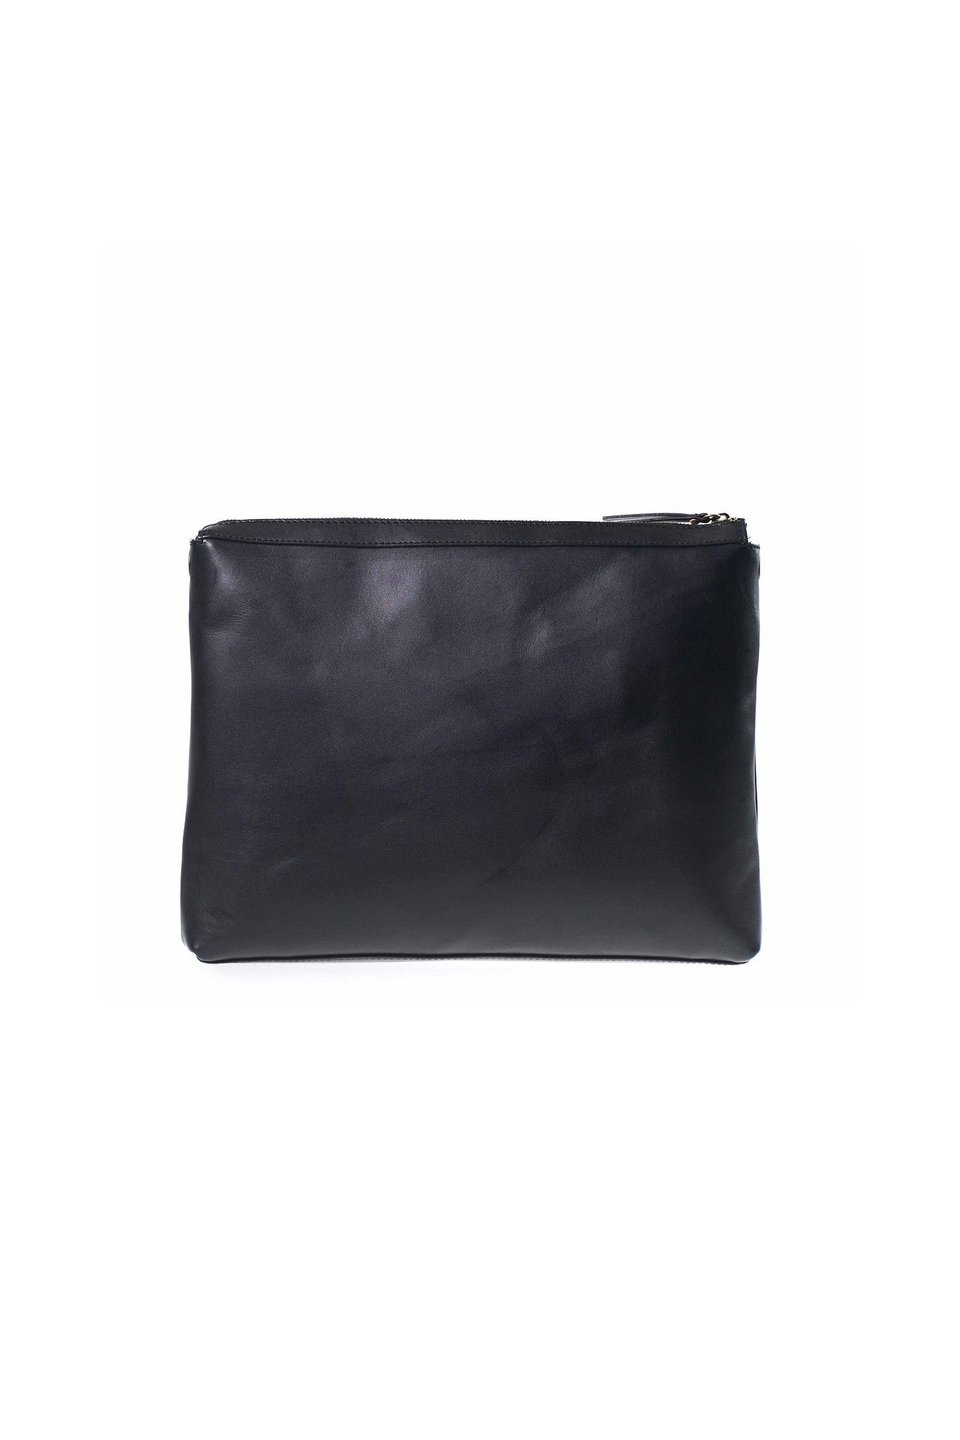 Scarlet Bag - Black - 1-size